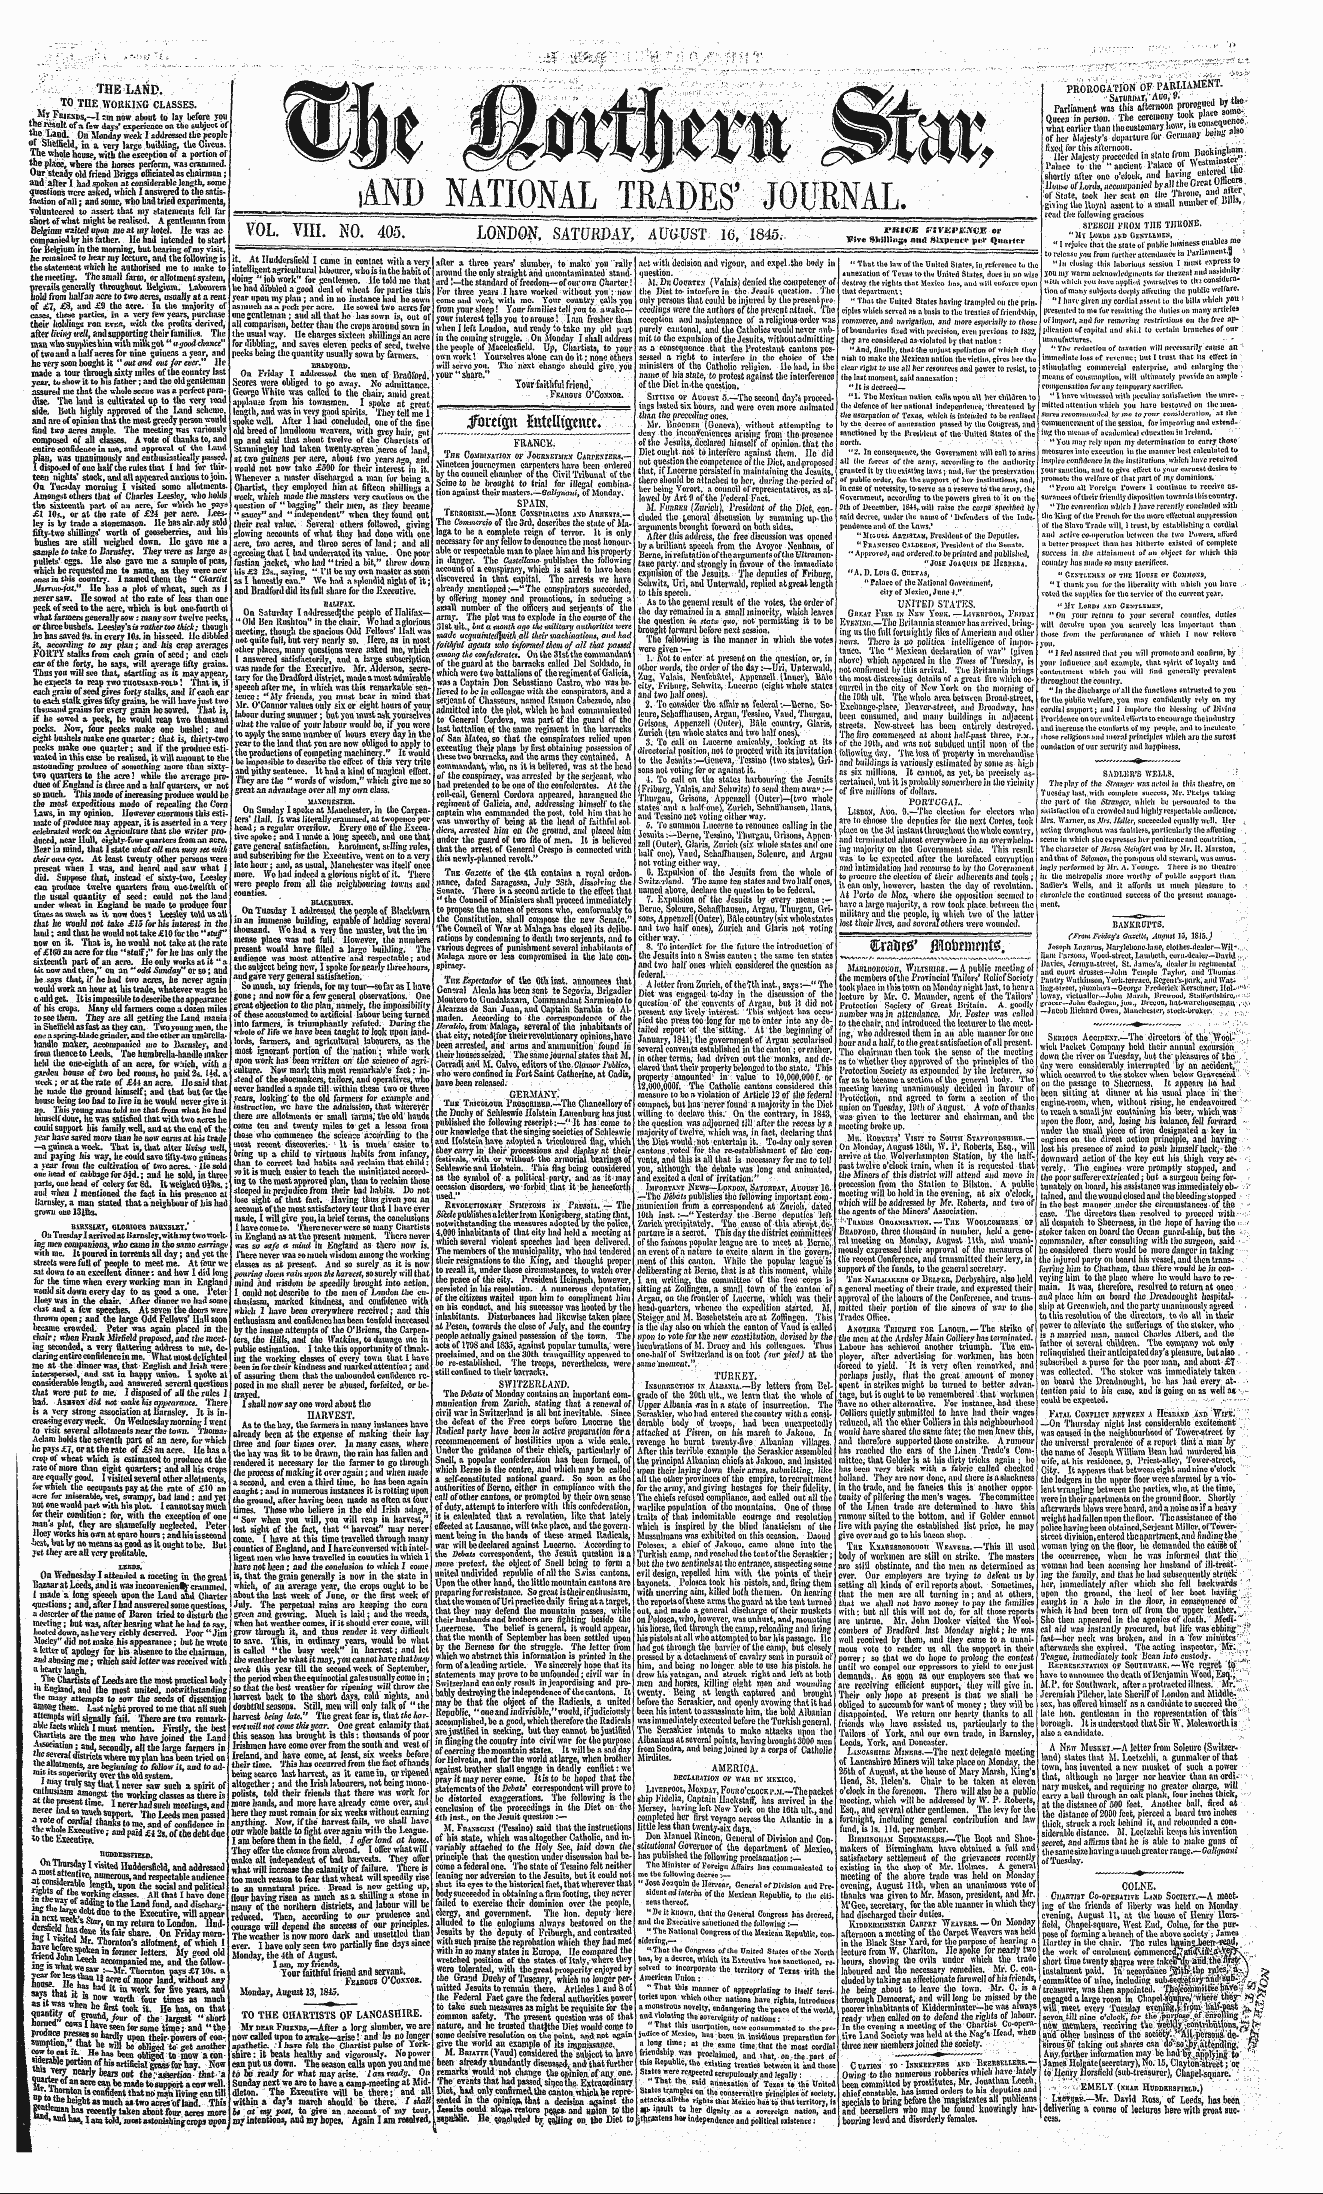 Northern Star (1837-1852): jS F Y, 3rd edition - Jbwtjjii Intelligence*